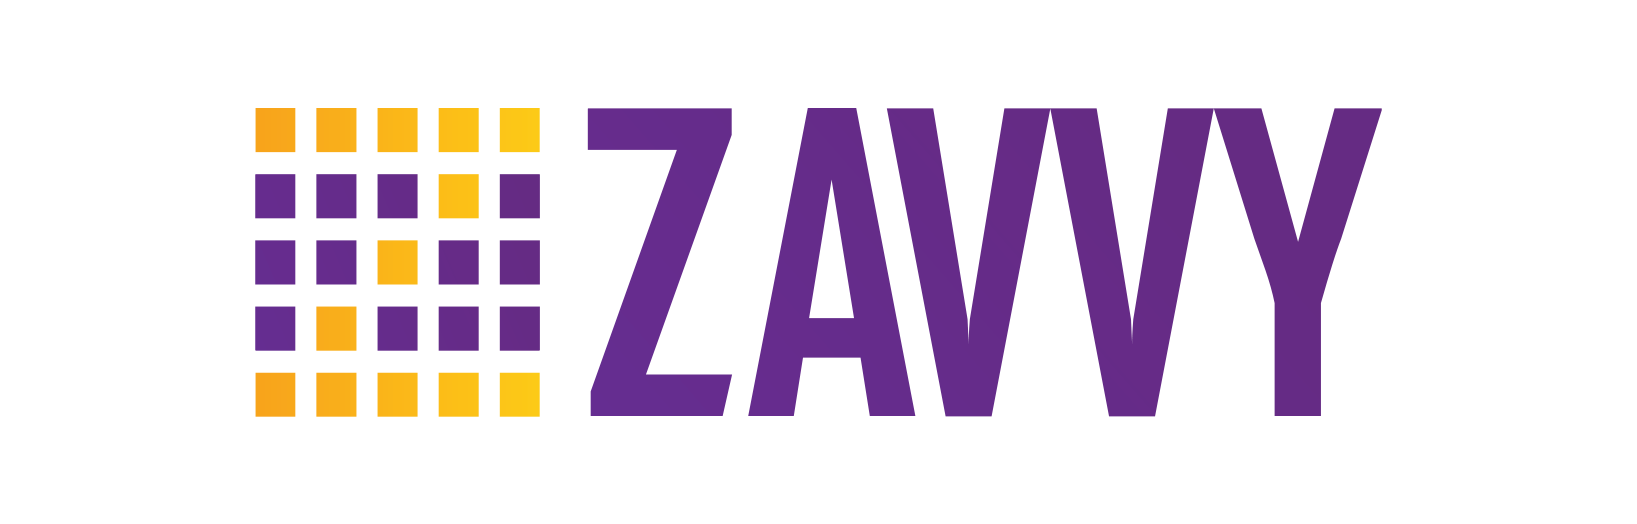 Zavvy Network